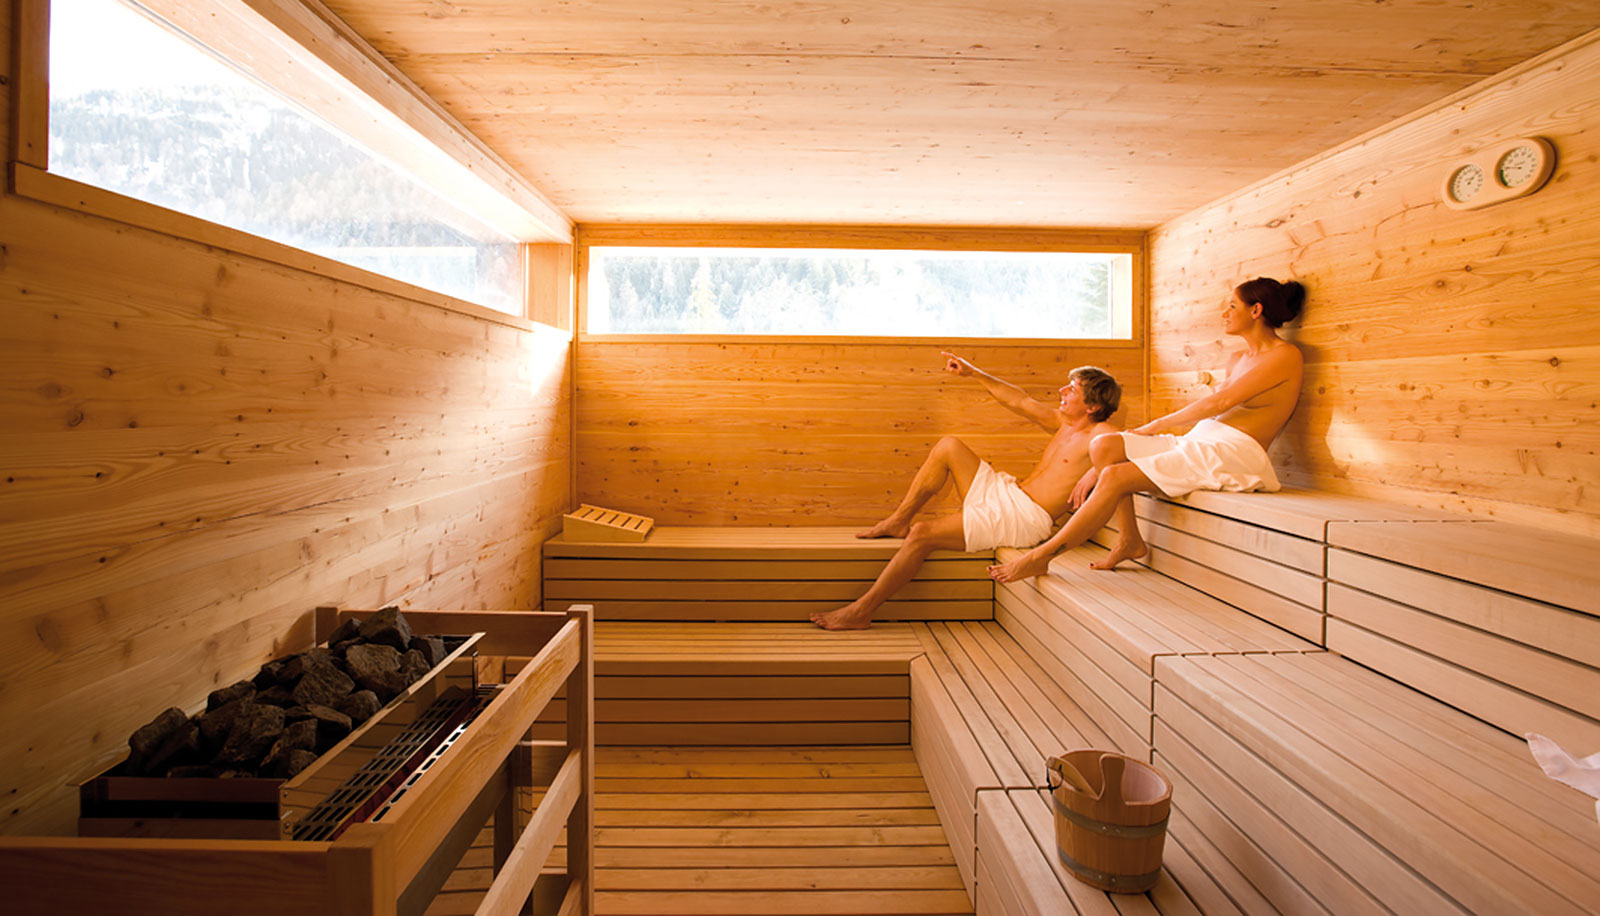 Una donna e un uomo nella sauna finlandese dell'Arosea Life Balance Hotel in Val d'Ultimo